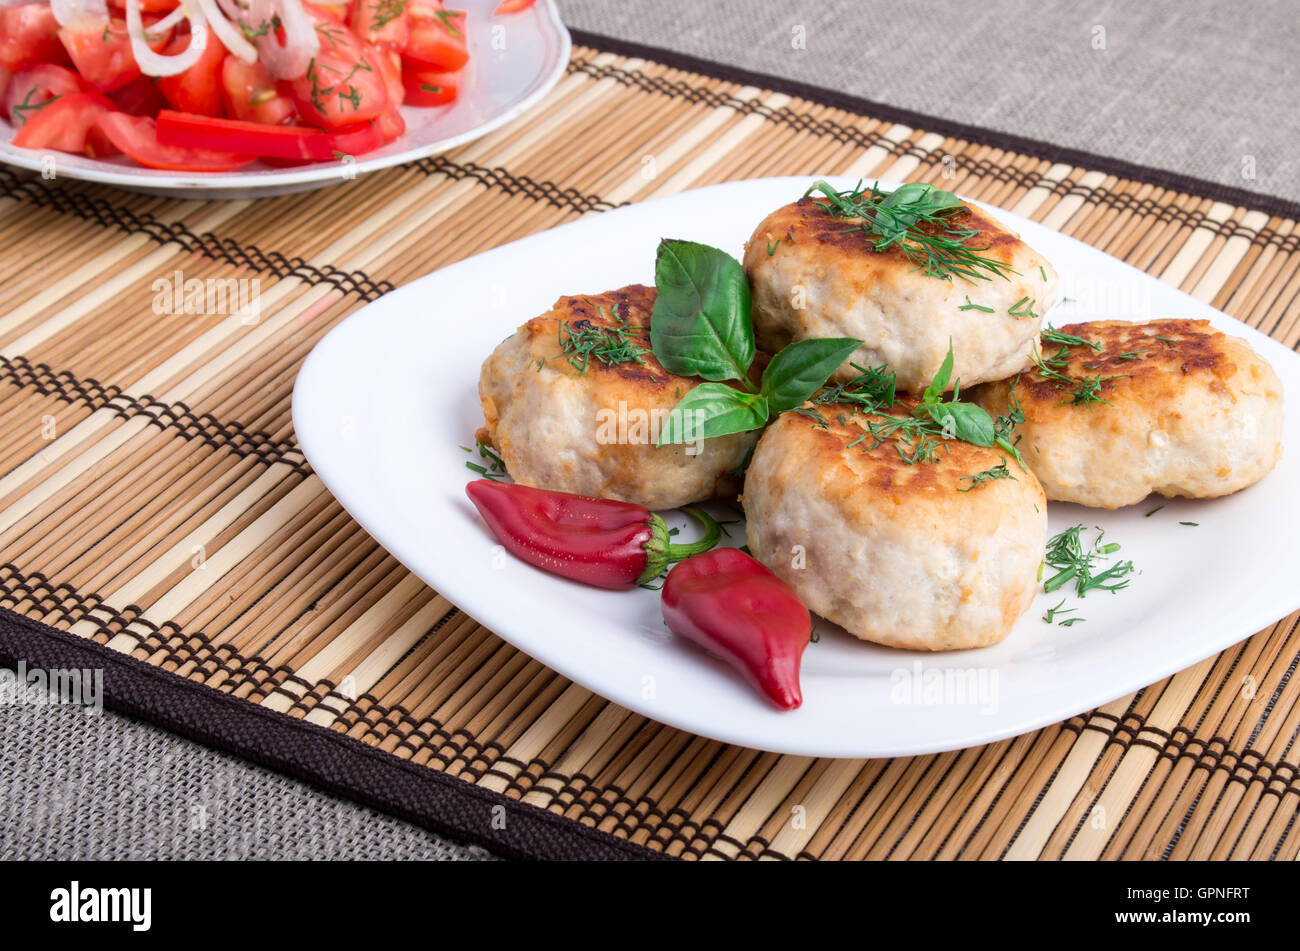 Vue rapprochée sur l'alimentation saine faite à partir d'ingrédients naturels - Boulettes de viande hachée de poulet et une salade de tomates crues Banque D'Images